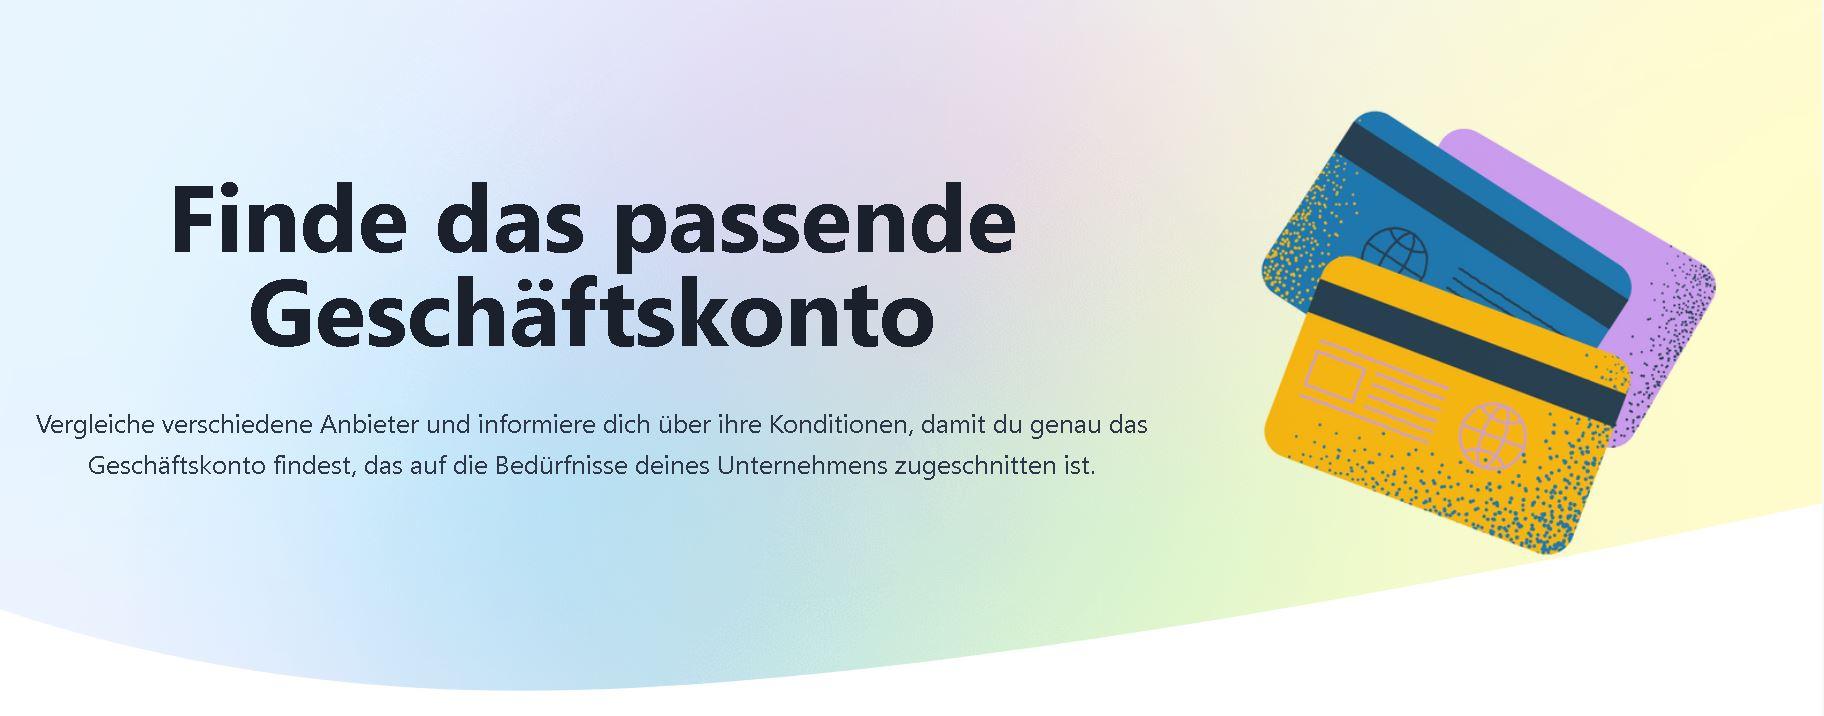 geschaeftskonto.io / startup von Dresden / Background